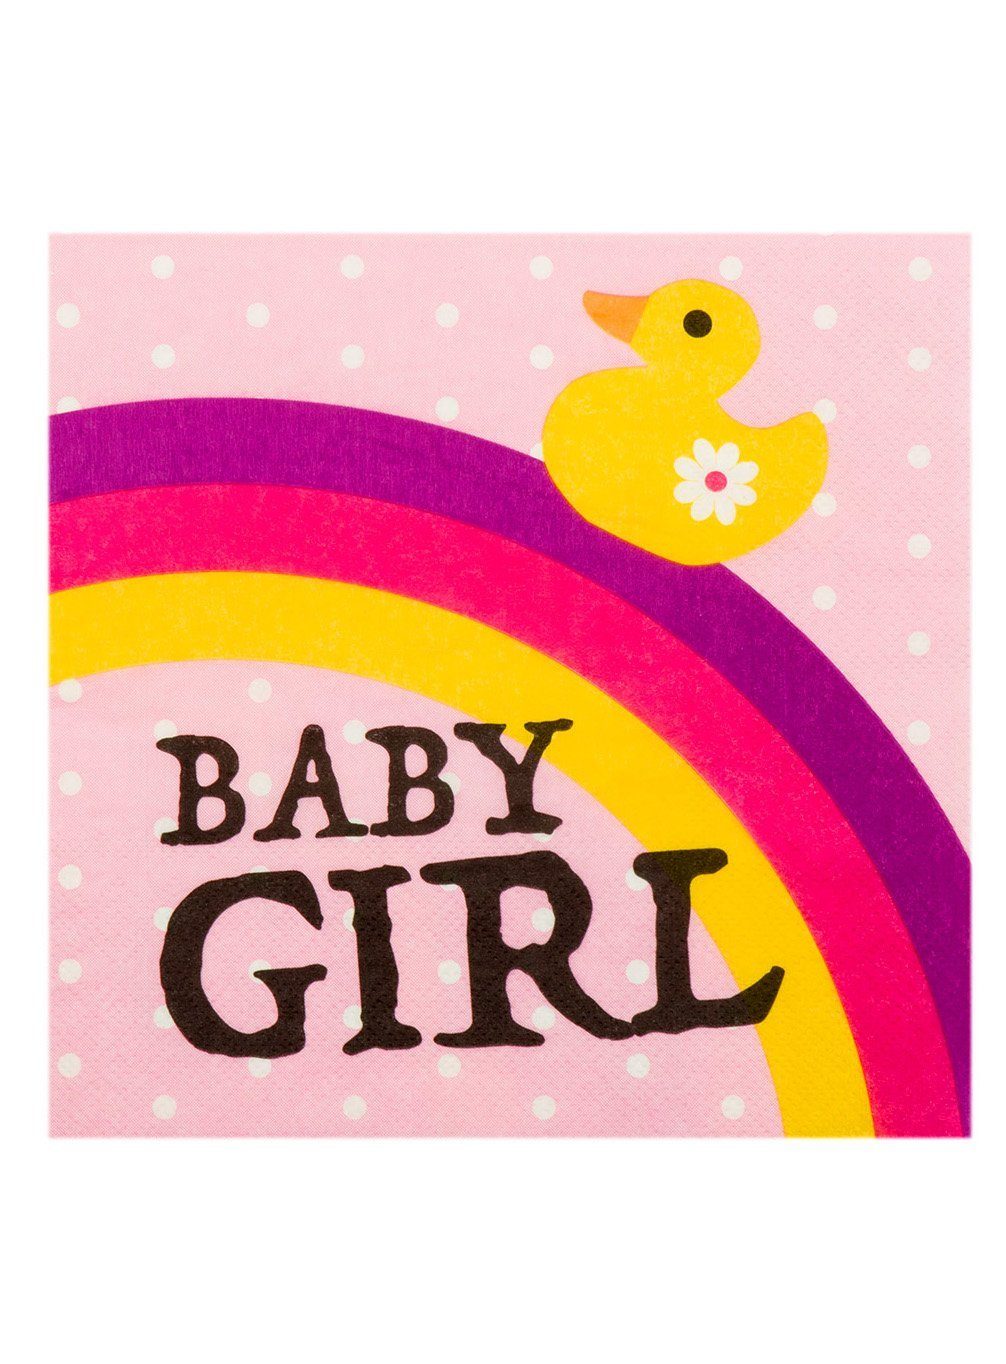 Girl Baby oder Geburt, Einweggeschirr-Set Papier, Partygeschirr für Pullerparty! Boland Servietten, Babygeburtstag 12